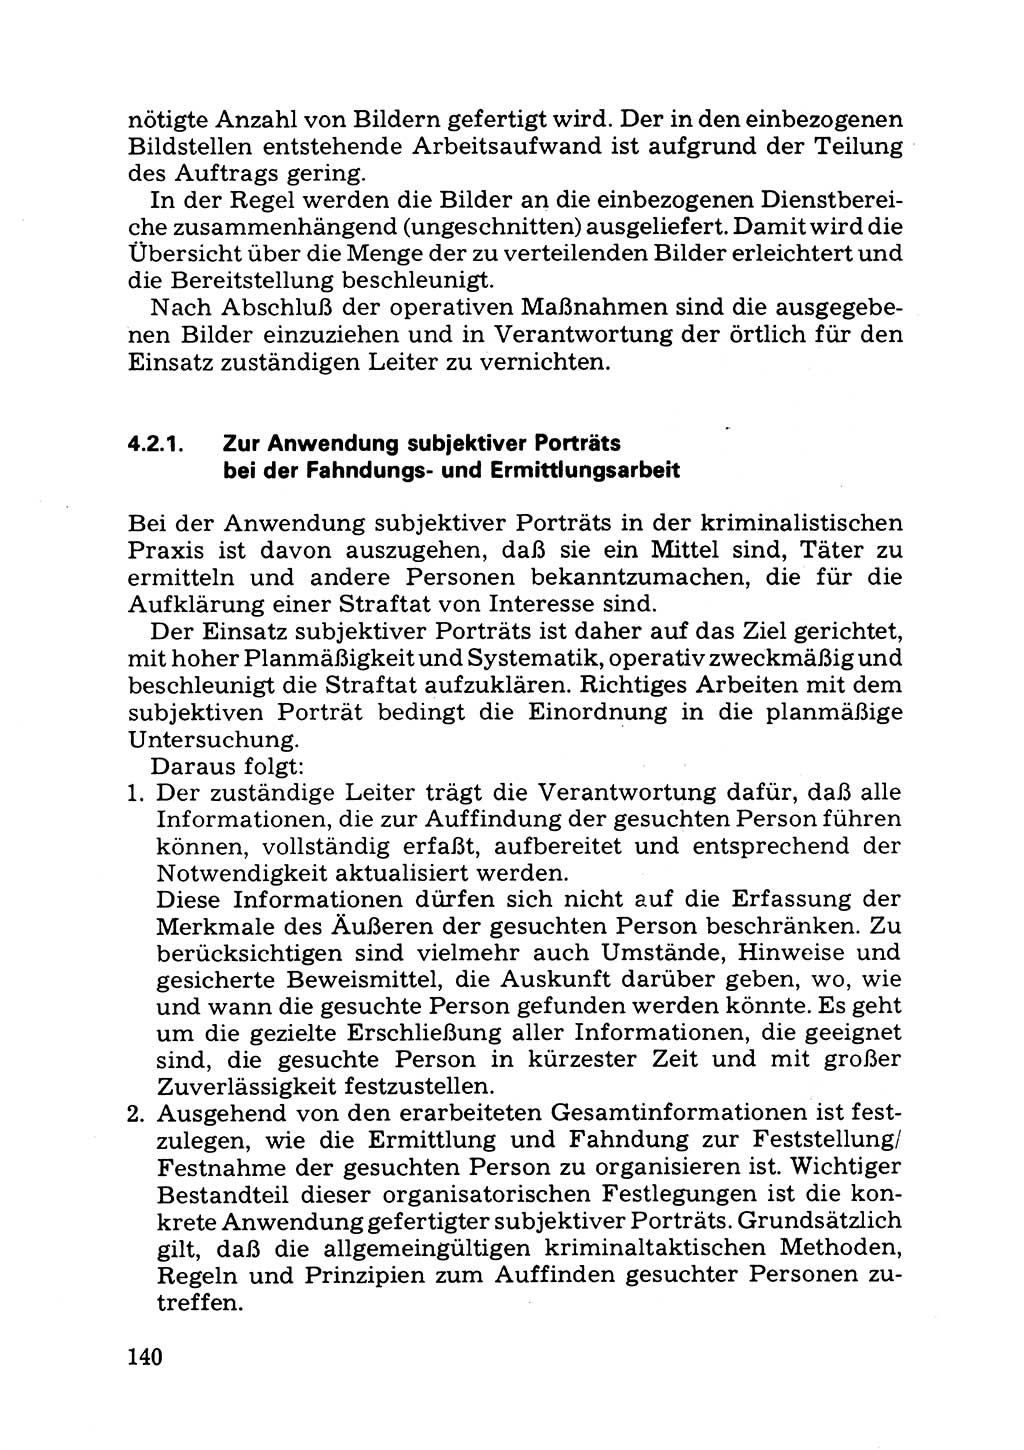 Das subjektive Porträt [Deutsche Demokratische Republik (DDR)] 1981, Seite 140 (Subj. Port. DDR 1981, S. 140)